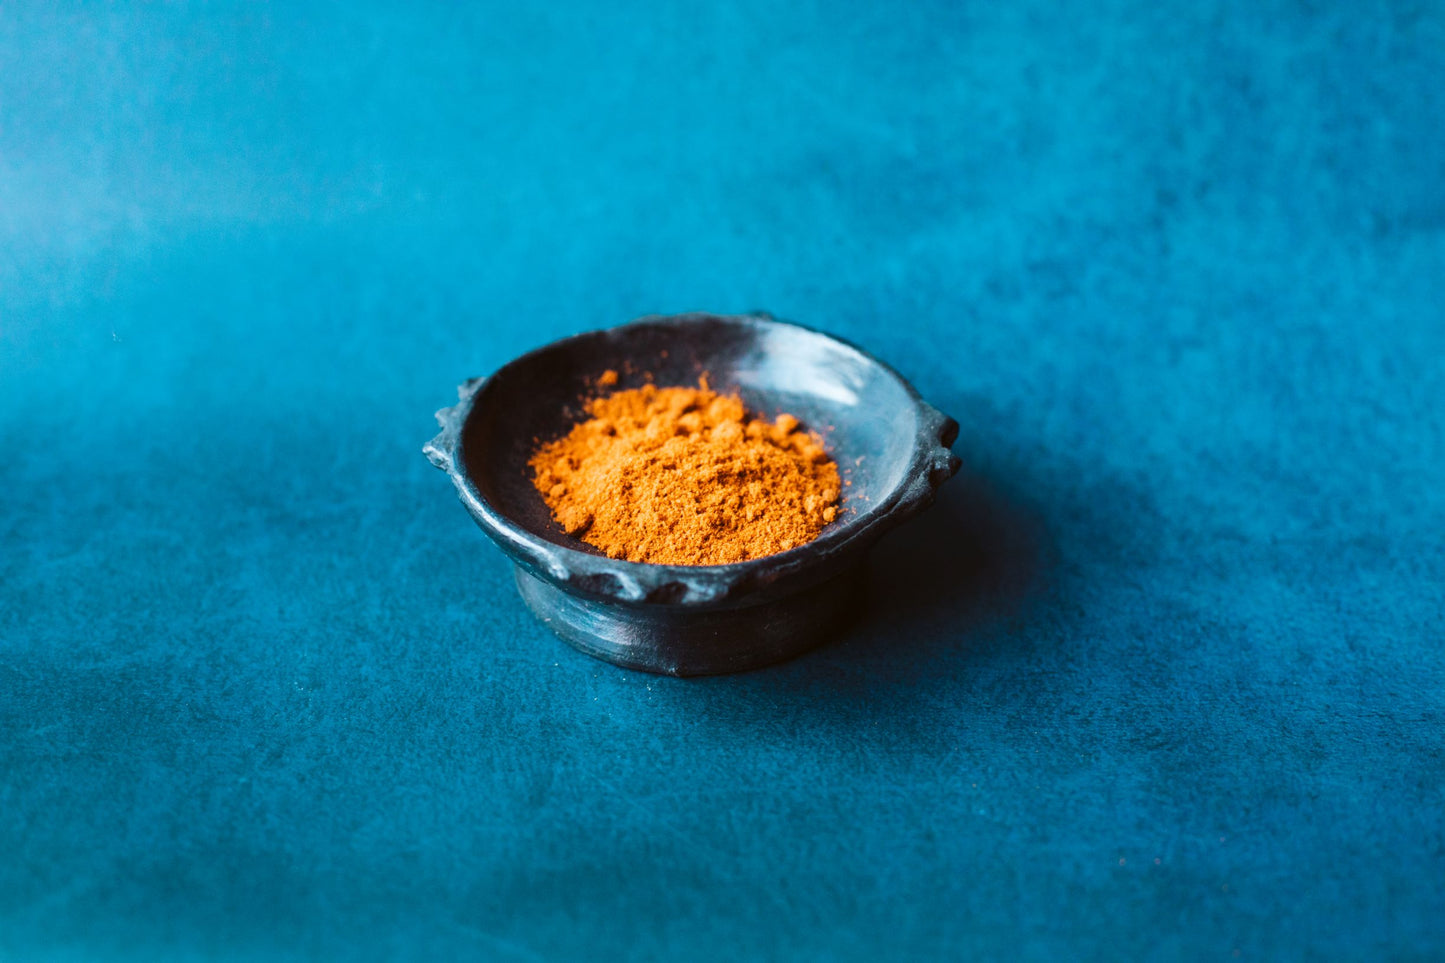 Brundo Spice Company Mitmita, Ethiopian Hot Chili Blend